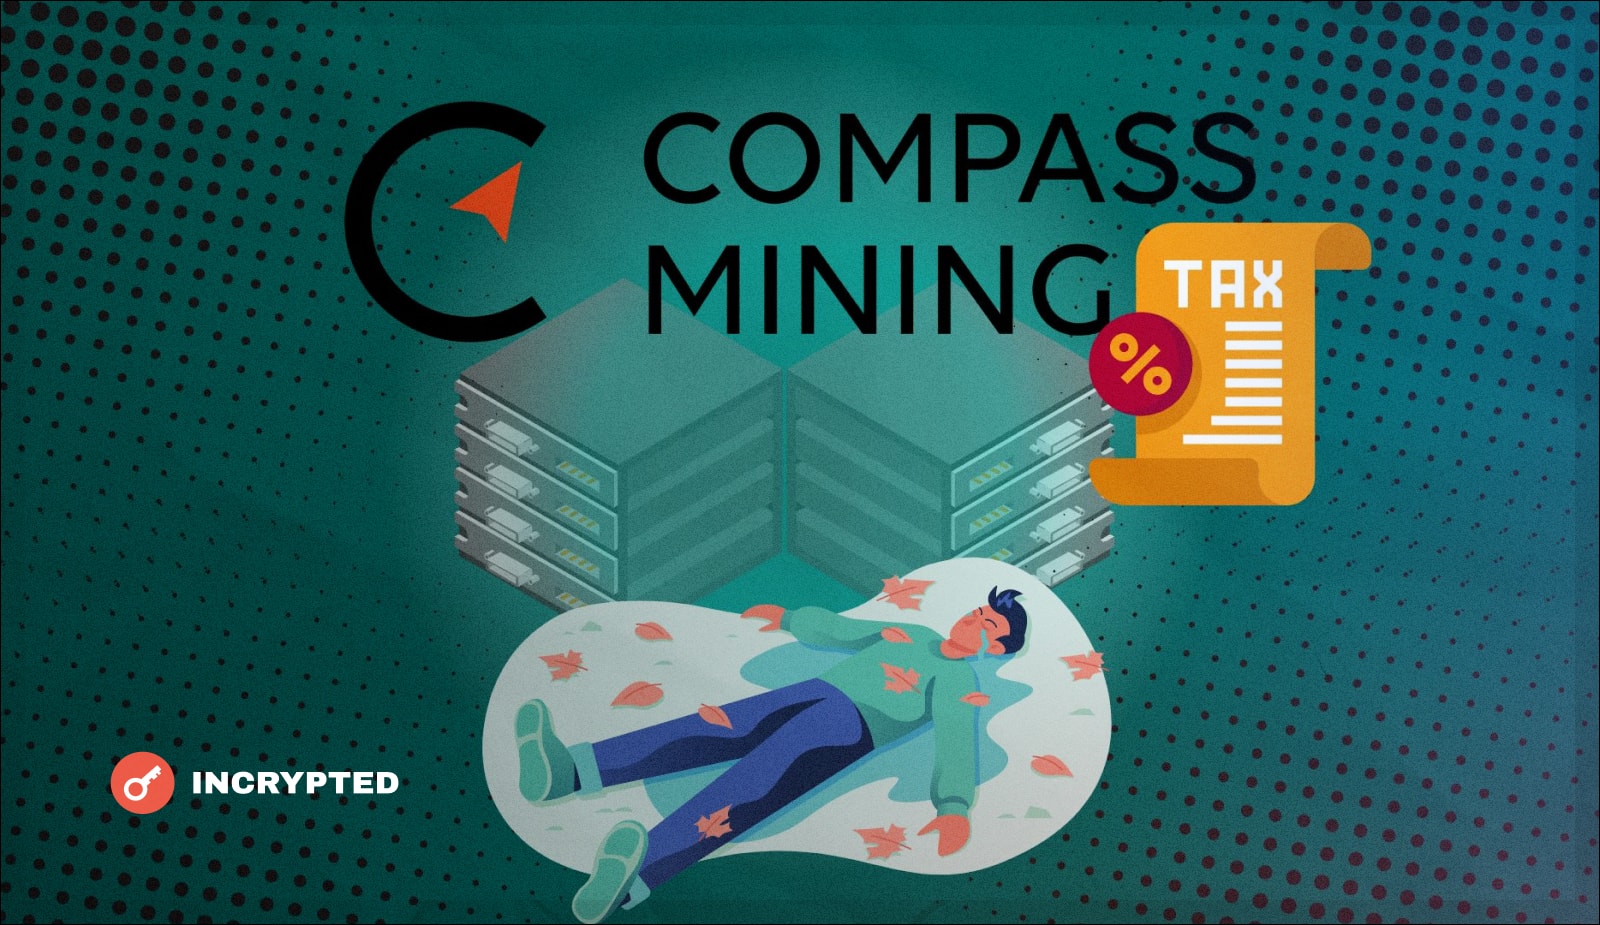 Крипто-майнер Compass Mining не смог “заплатить за свет”. У компании отобрали одну из ферм. Заглавный коллаж новости.